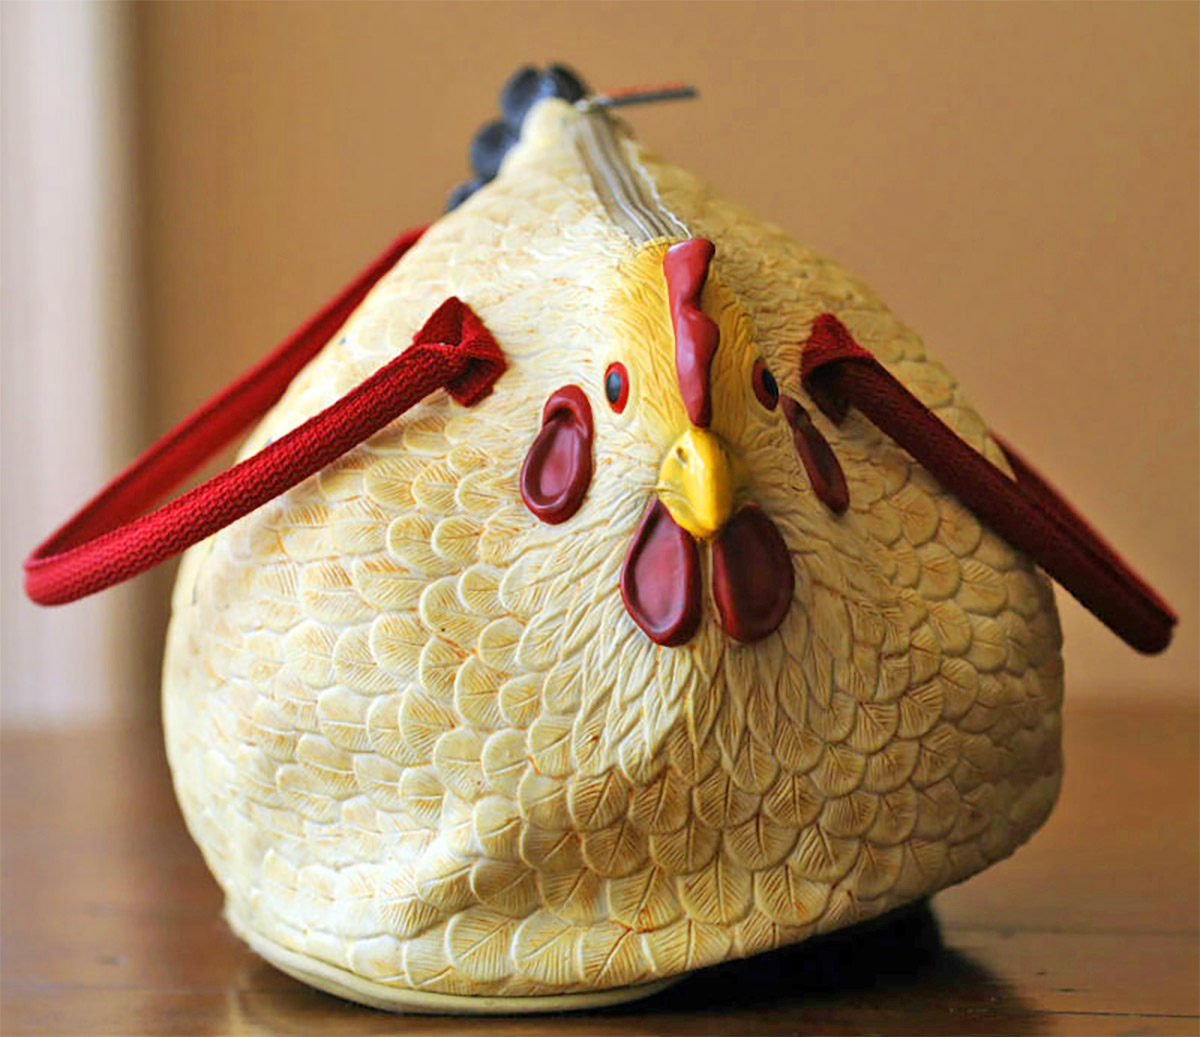 Chicken Bag - Chicken shaped purse